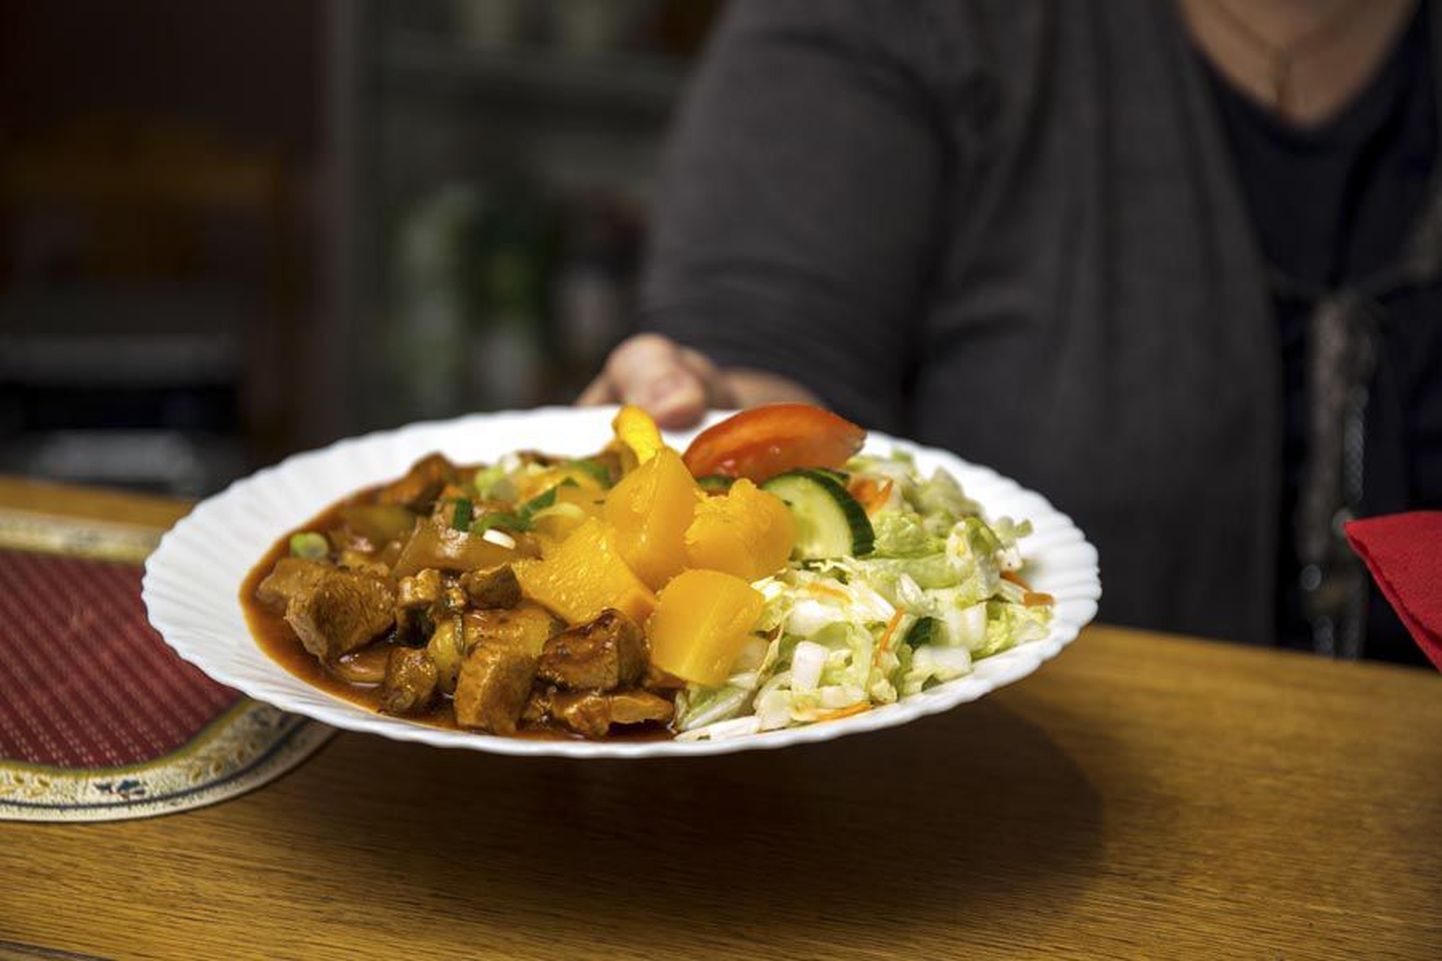 Just nagu 13 ülejäänud Viljandi toidukohta oma päevapakkumised internetti riputanud Minikohvikus on koduste toitudega päevamenüü eeliseks kiirus. Nii saab näiteks paarkümmend lõunatajat veerandtunniga kõhu täis.